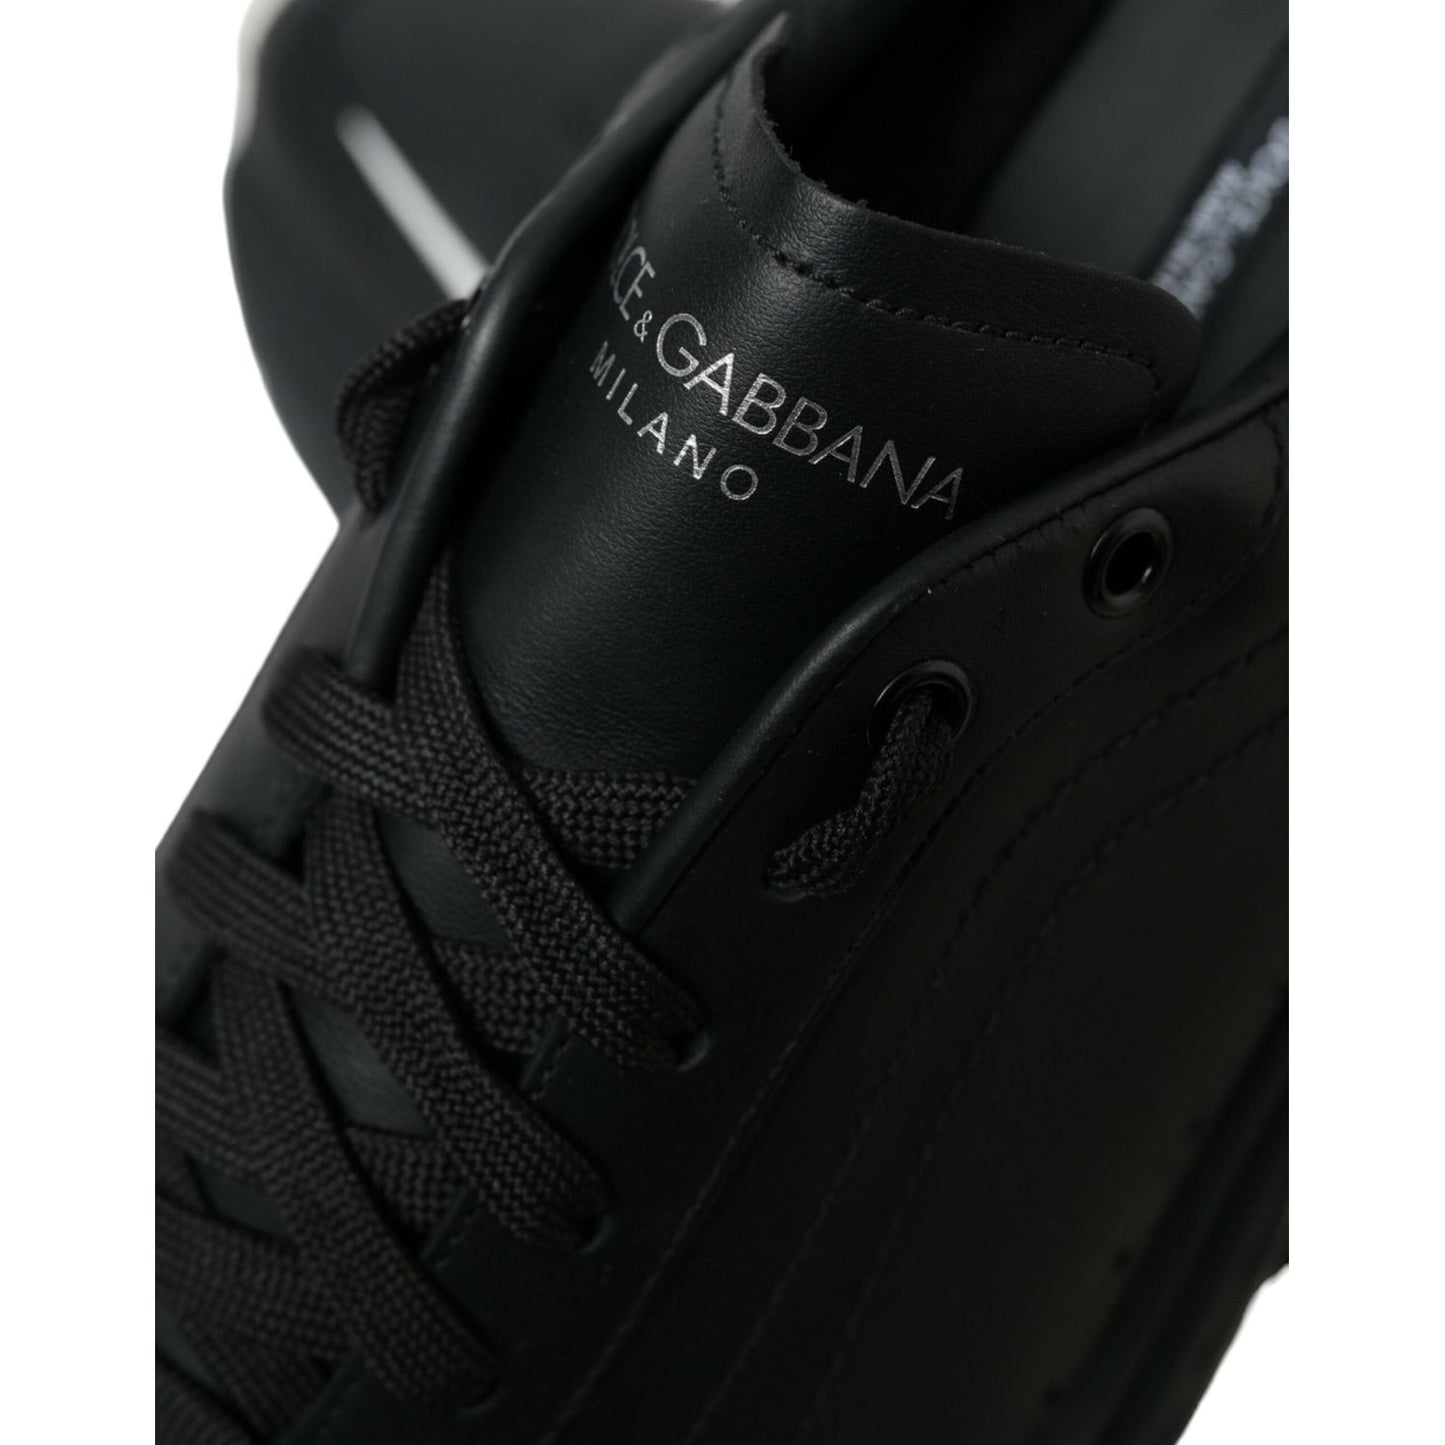 Dolce & Gabbana Elevated Daymaster Black Platform Sneakers elevated-daymaster-black-platform-sneakers